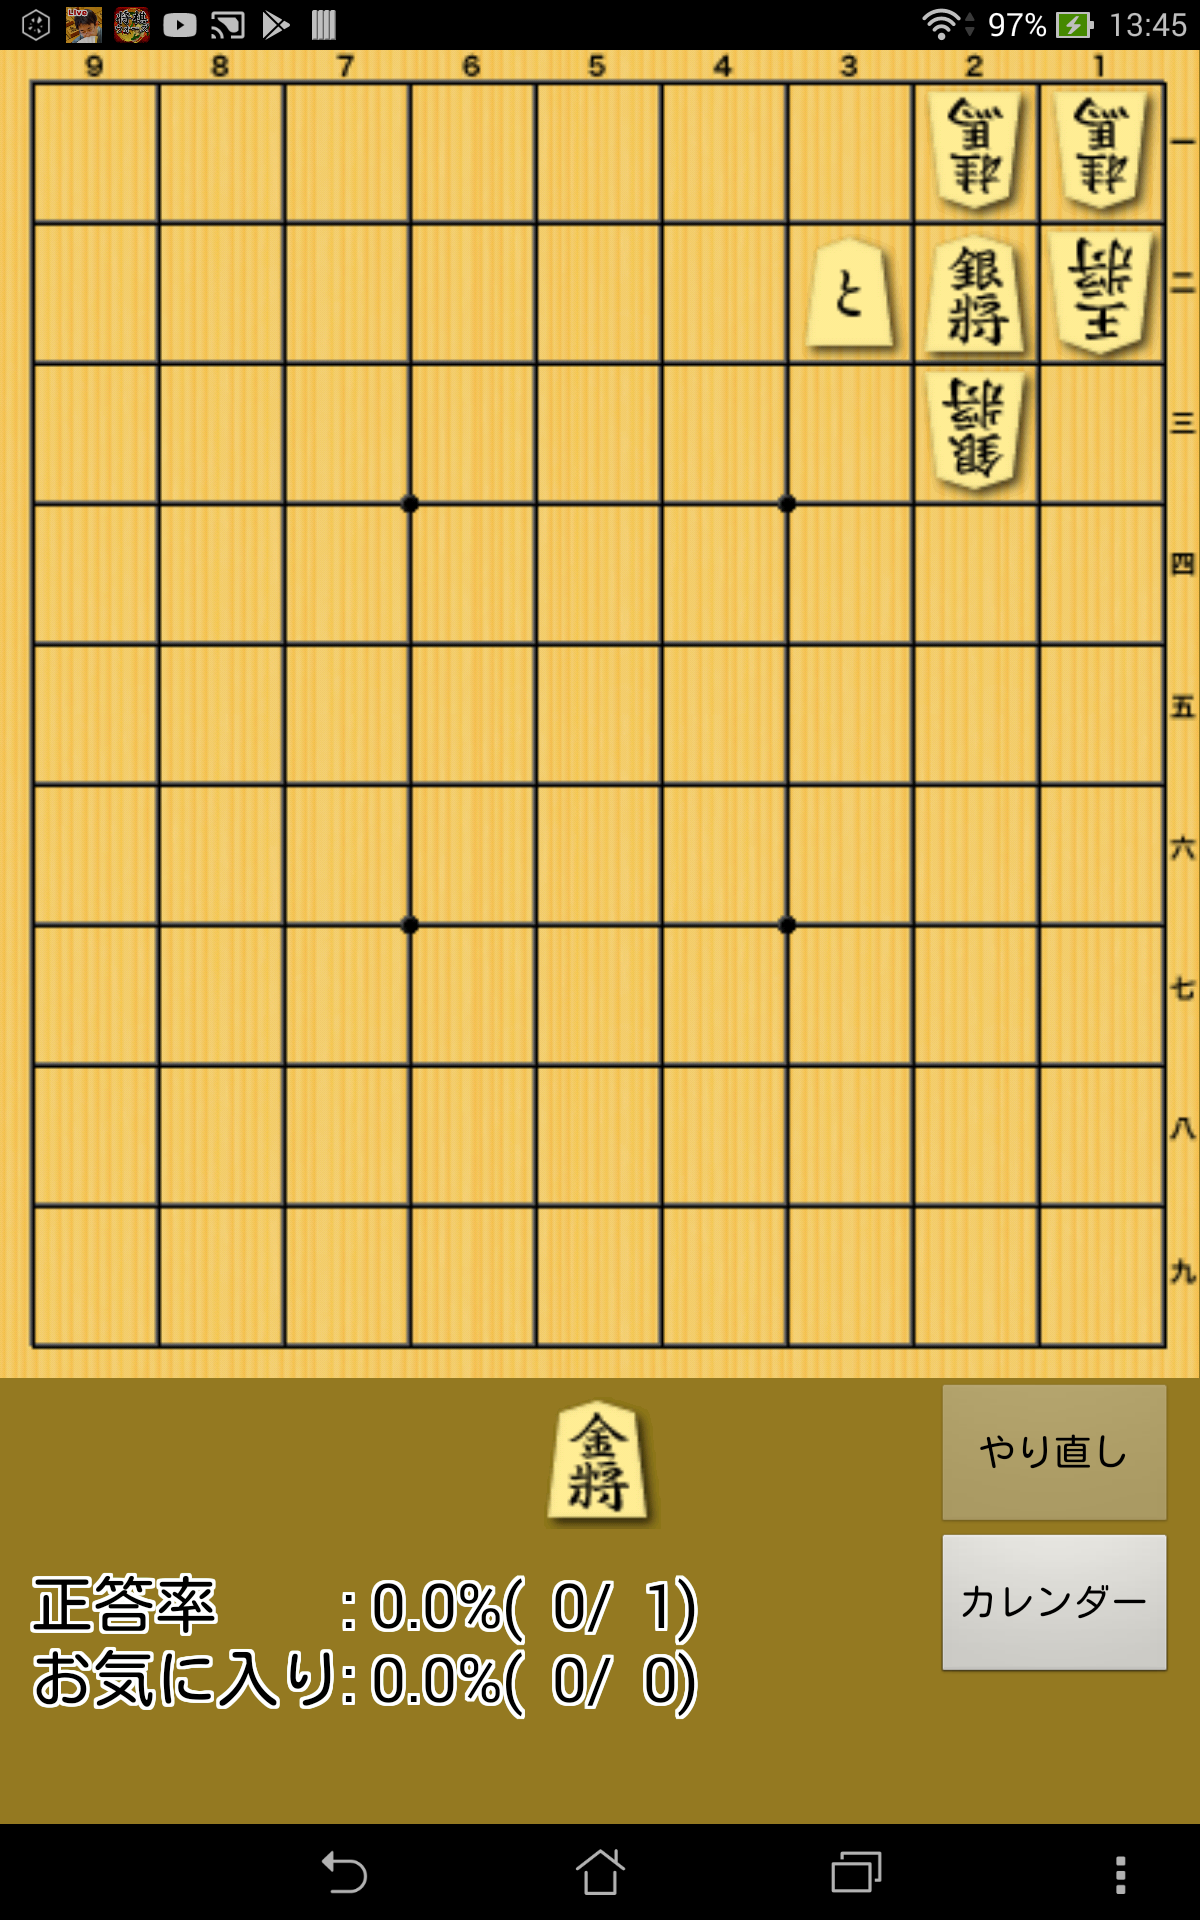 Screenshot 1 of Gato diario y Tsume Shogi 2.8